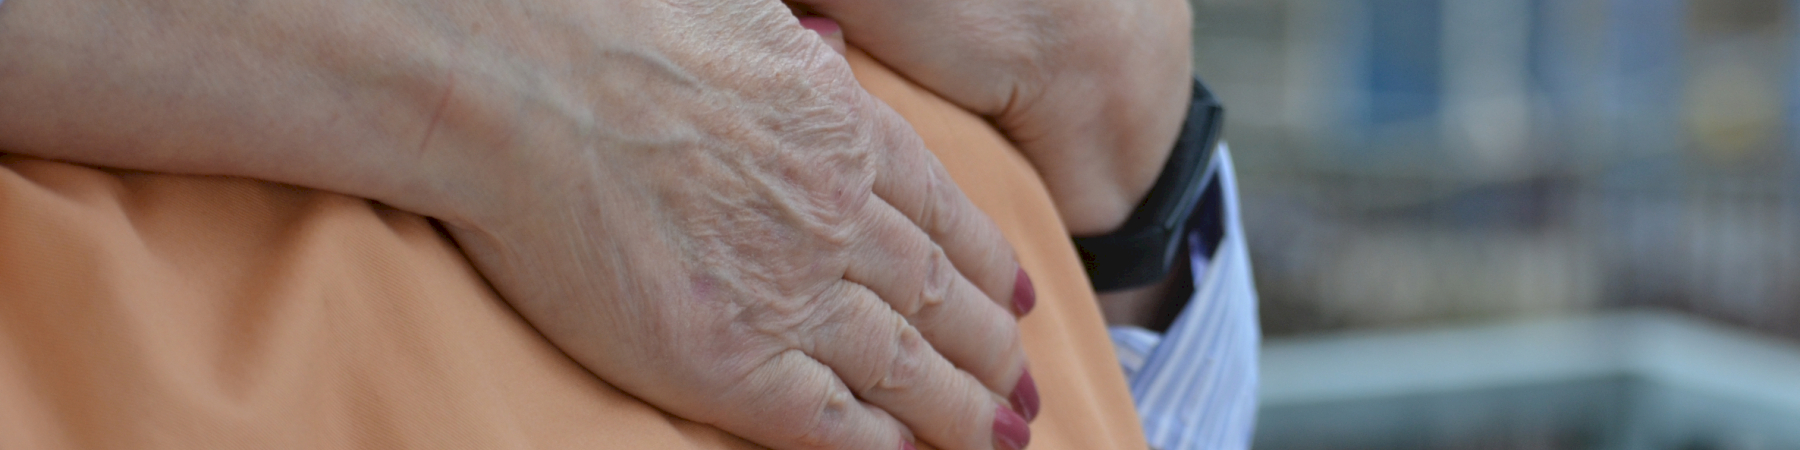 88-vuotias Marita vastaa aviomiehensä hoidosta 24/7: "Omaishoito on henkisesti rankkaa, puolison muistamattomuus tuntuu murheelliselta"